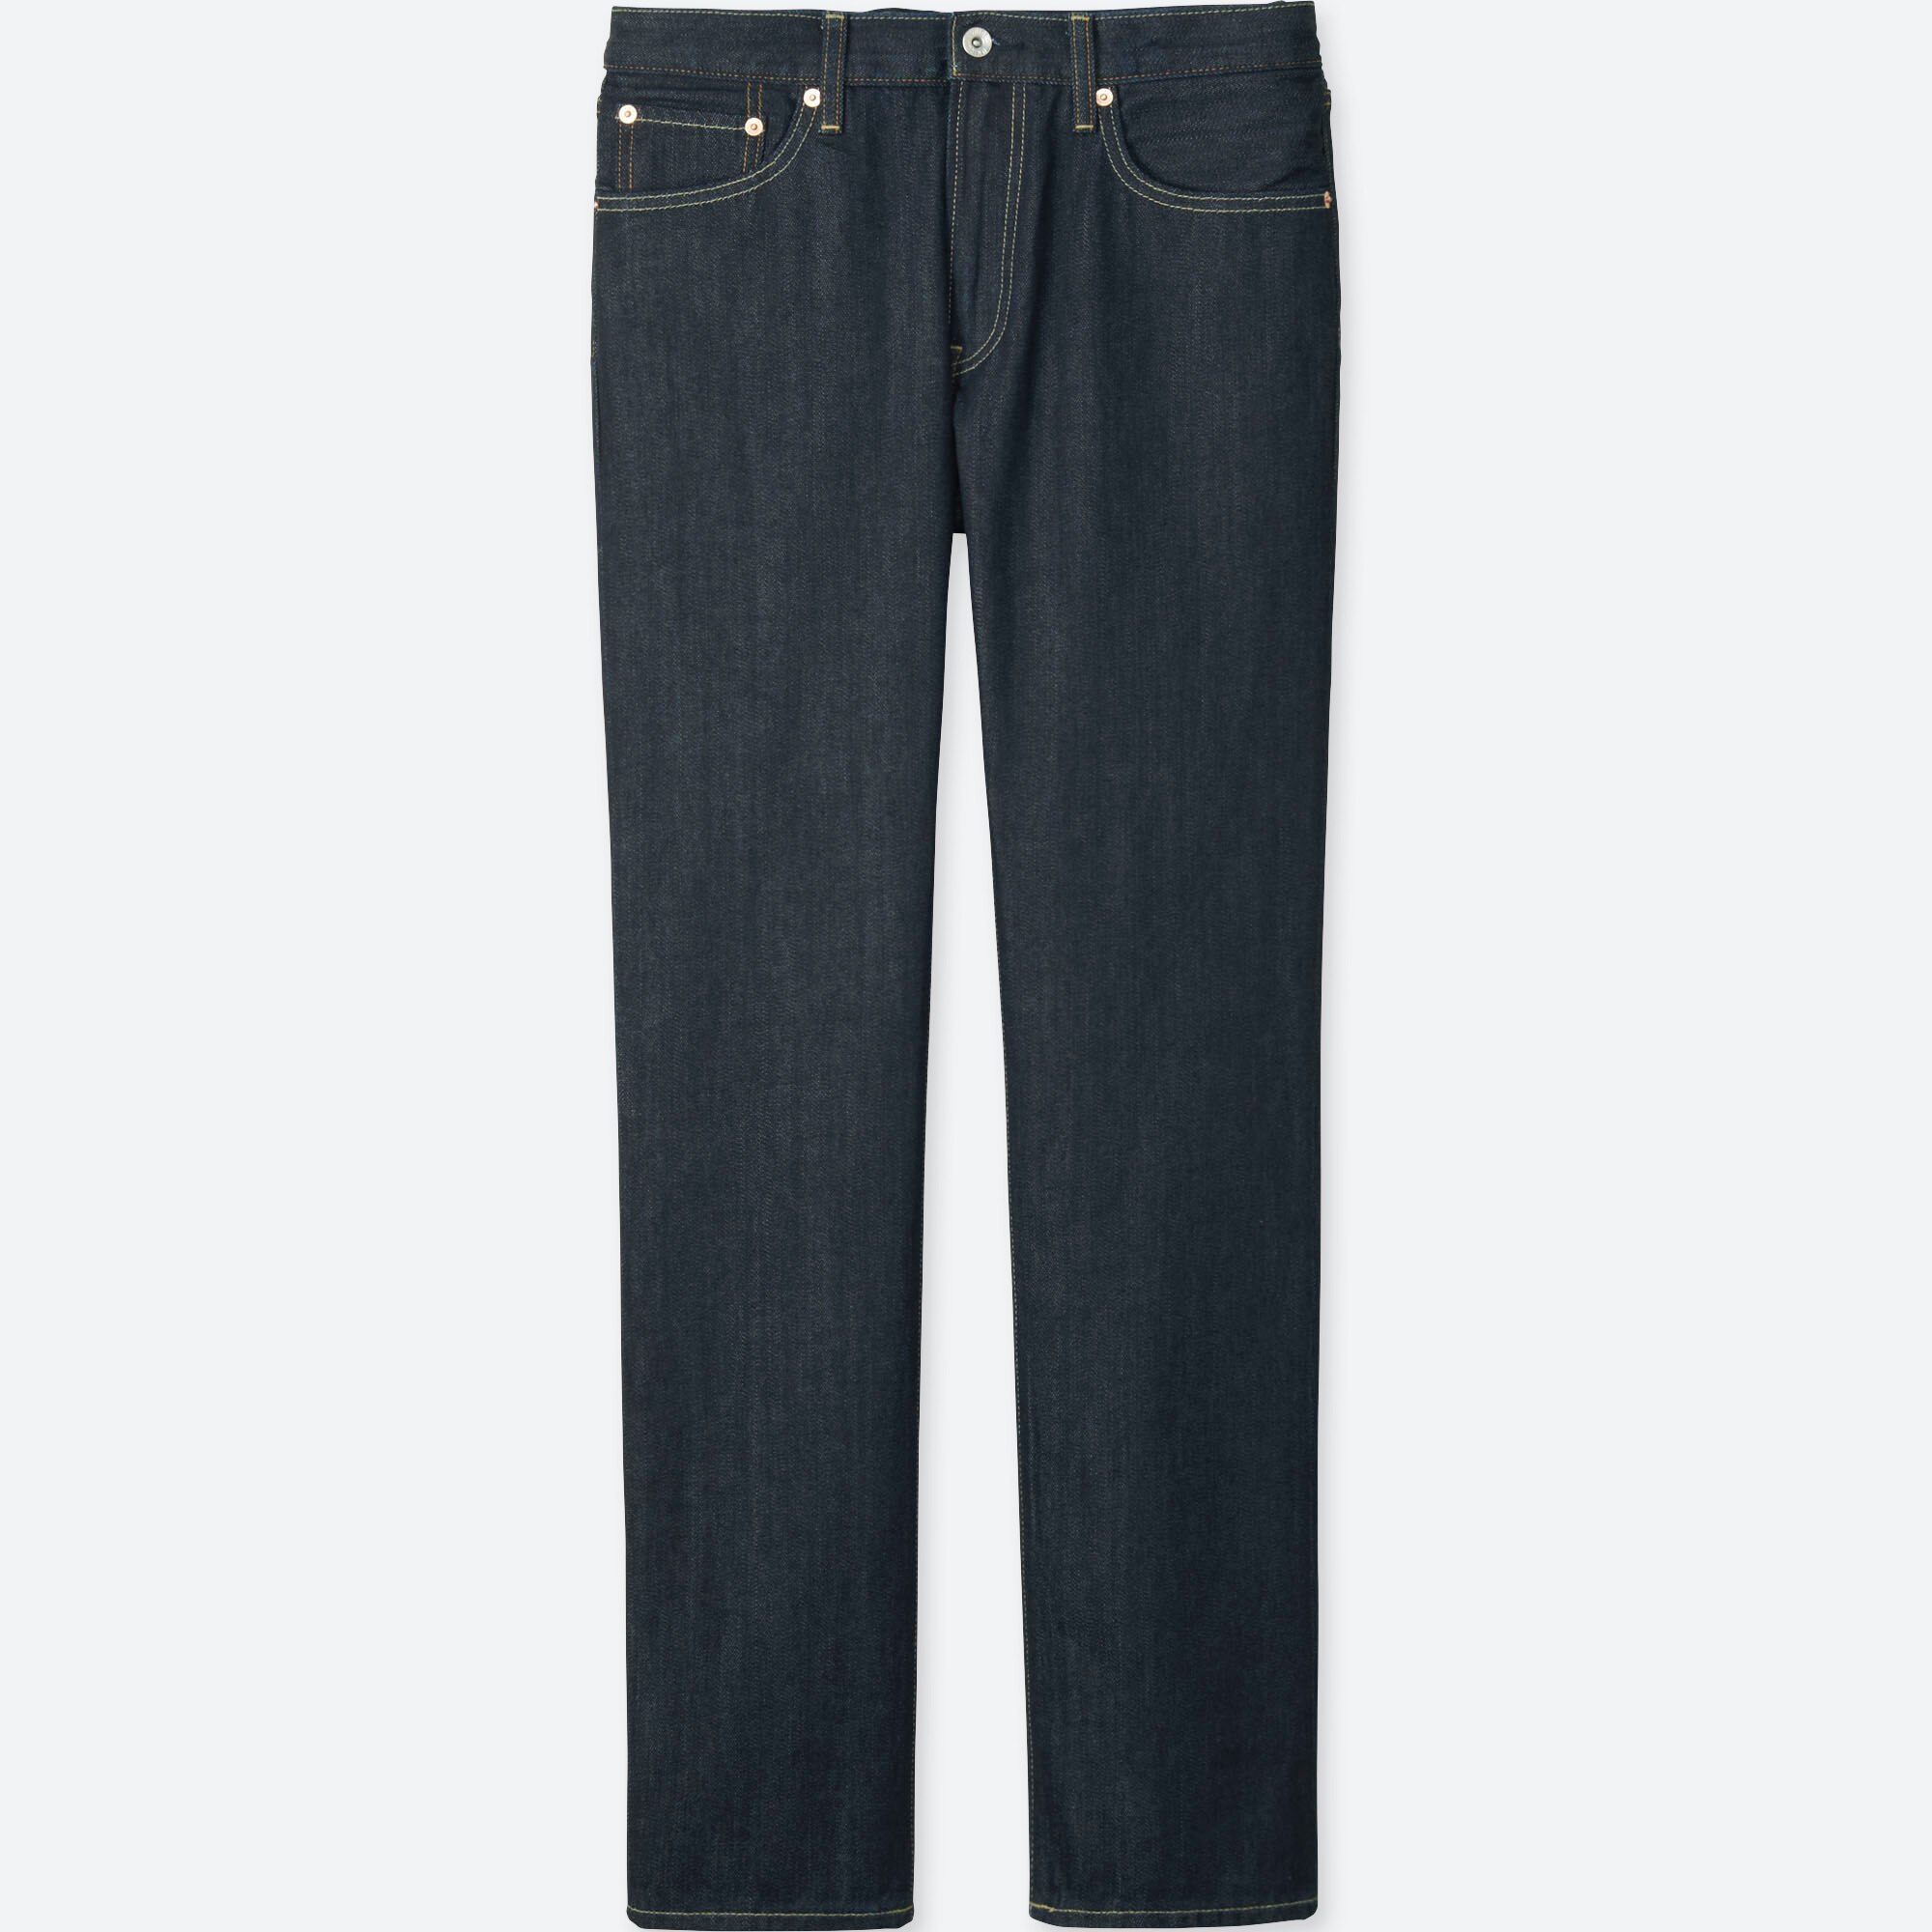 victoria beckham jeans ebay